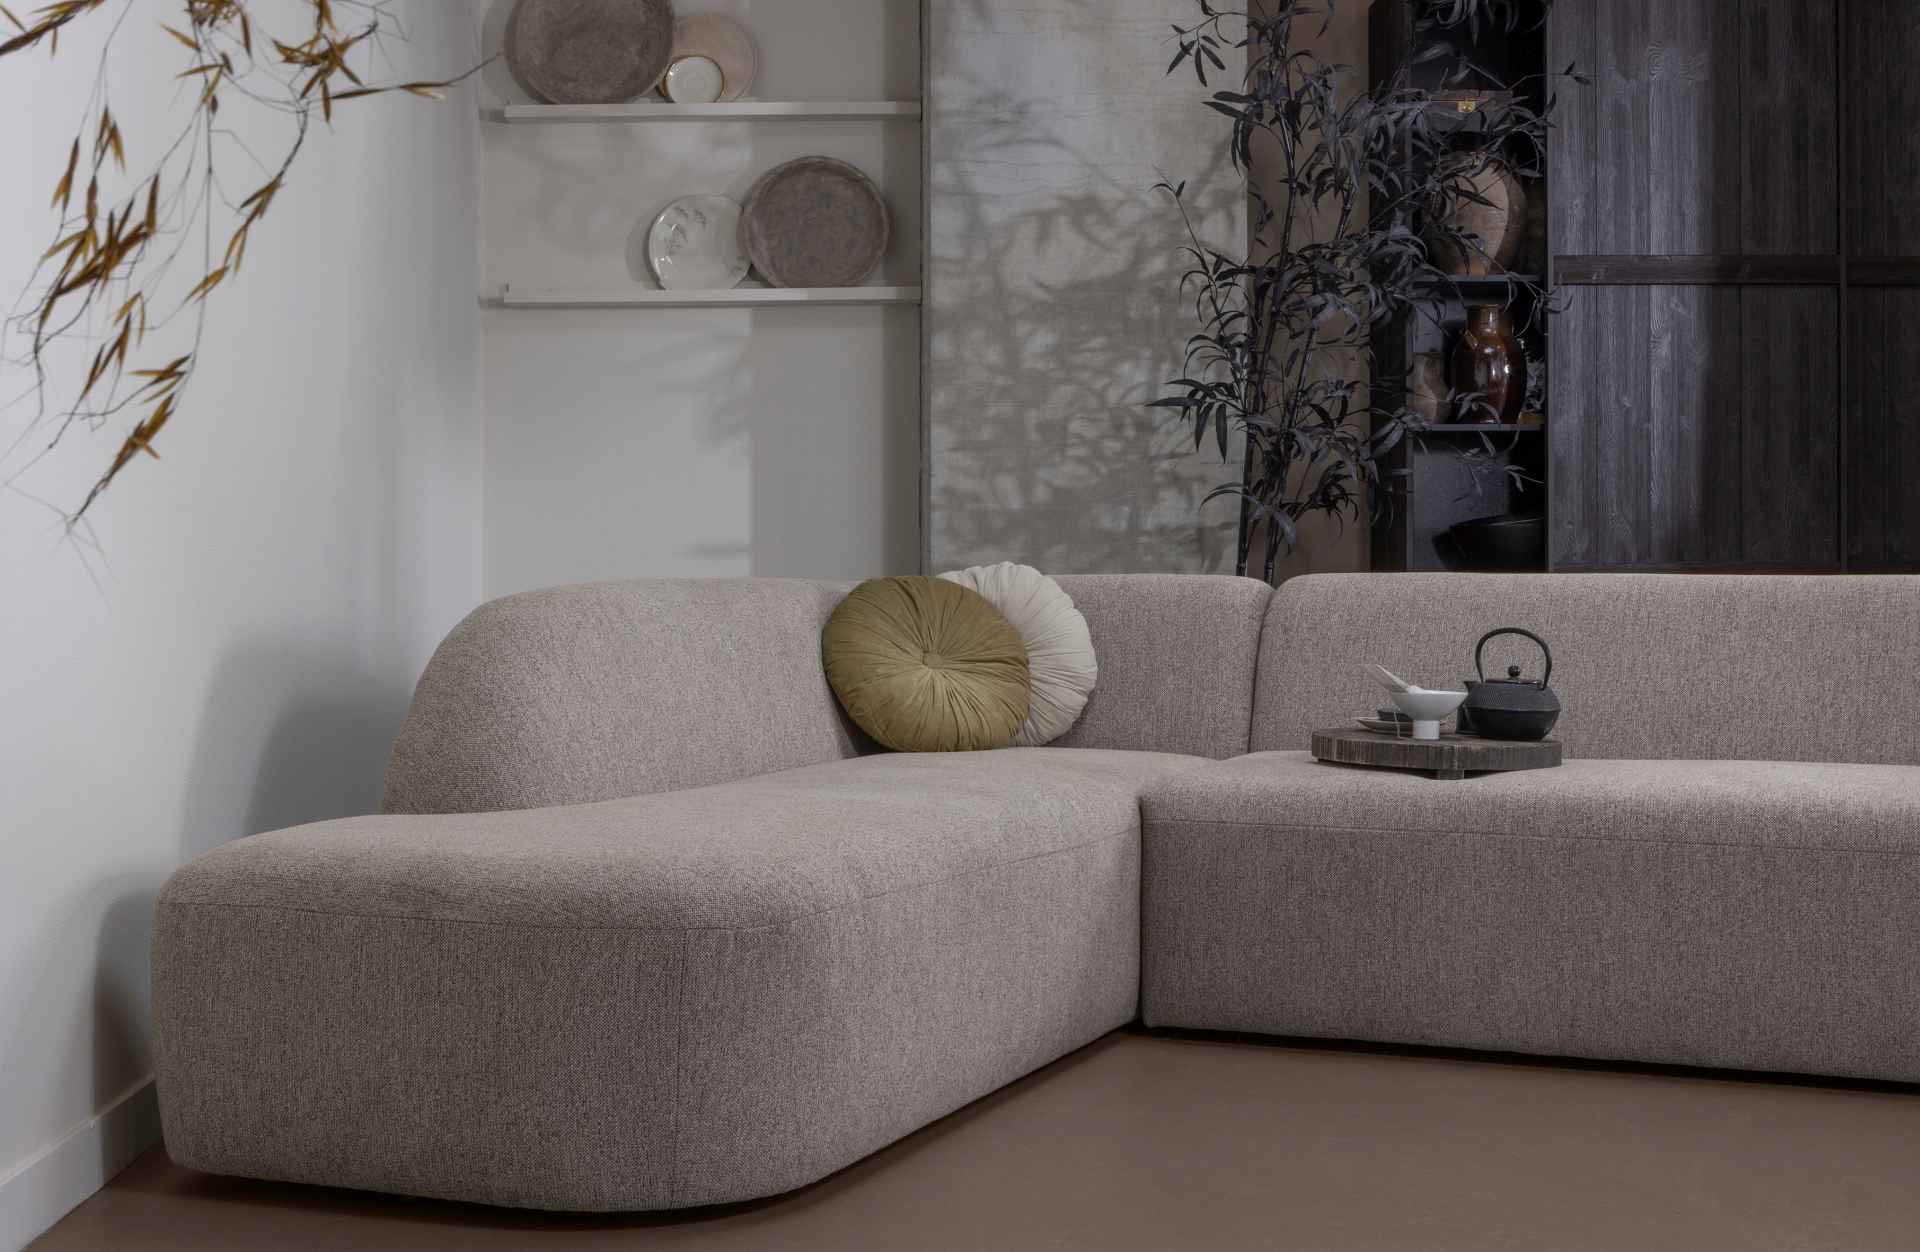 Das Ecksofa Sloping wurde aus bequemen Stoff gefertigt, welcher einen Hellbraunen Farbton besitzt. Das Sofa ist ein echter Hingucker für dein Zuhause, denn es hat ein modernes Design, welches zu jeder Inneneinrichtung passt.